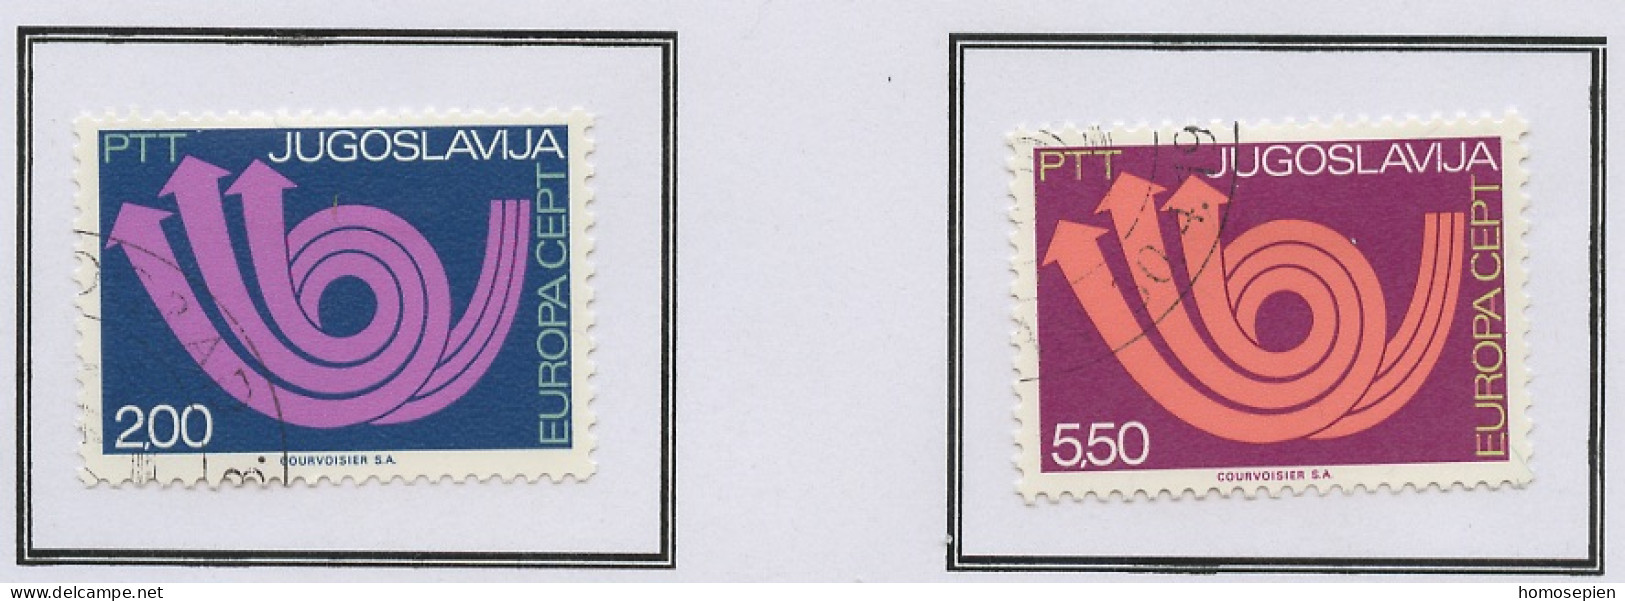 Yougoslavie - Jugoslawien - Yugoslavia 1973 Y&T N°1390 à 1391 - Michel N°1507 à 1508 (o) - EUROPA - Oblitérés